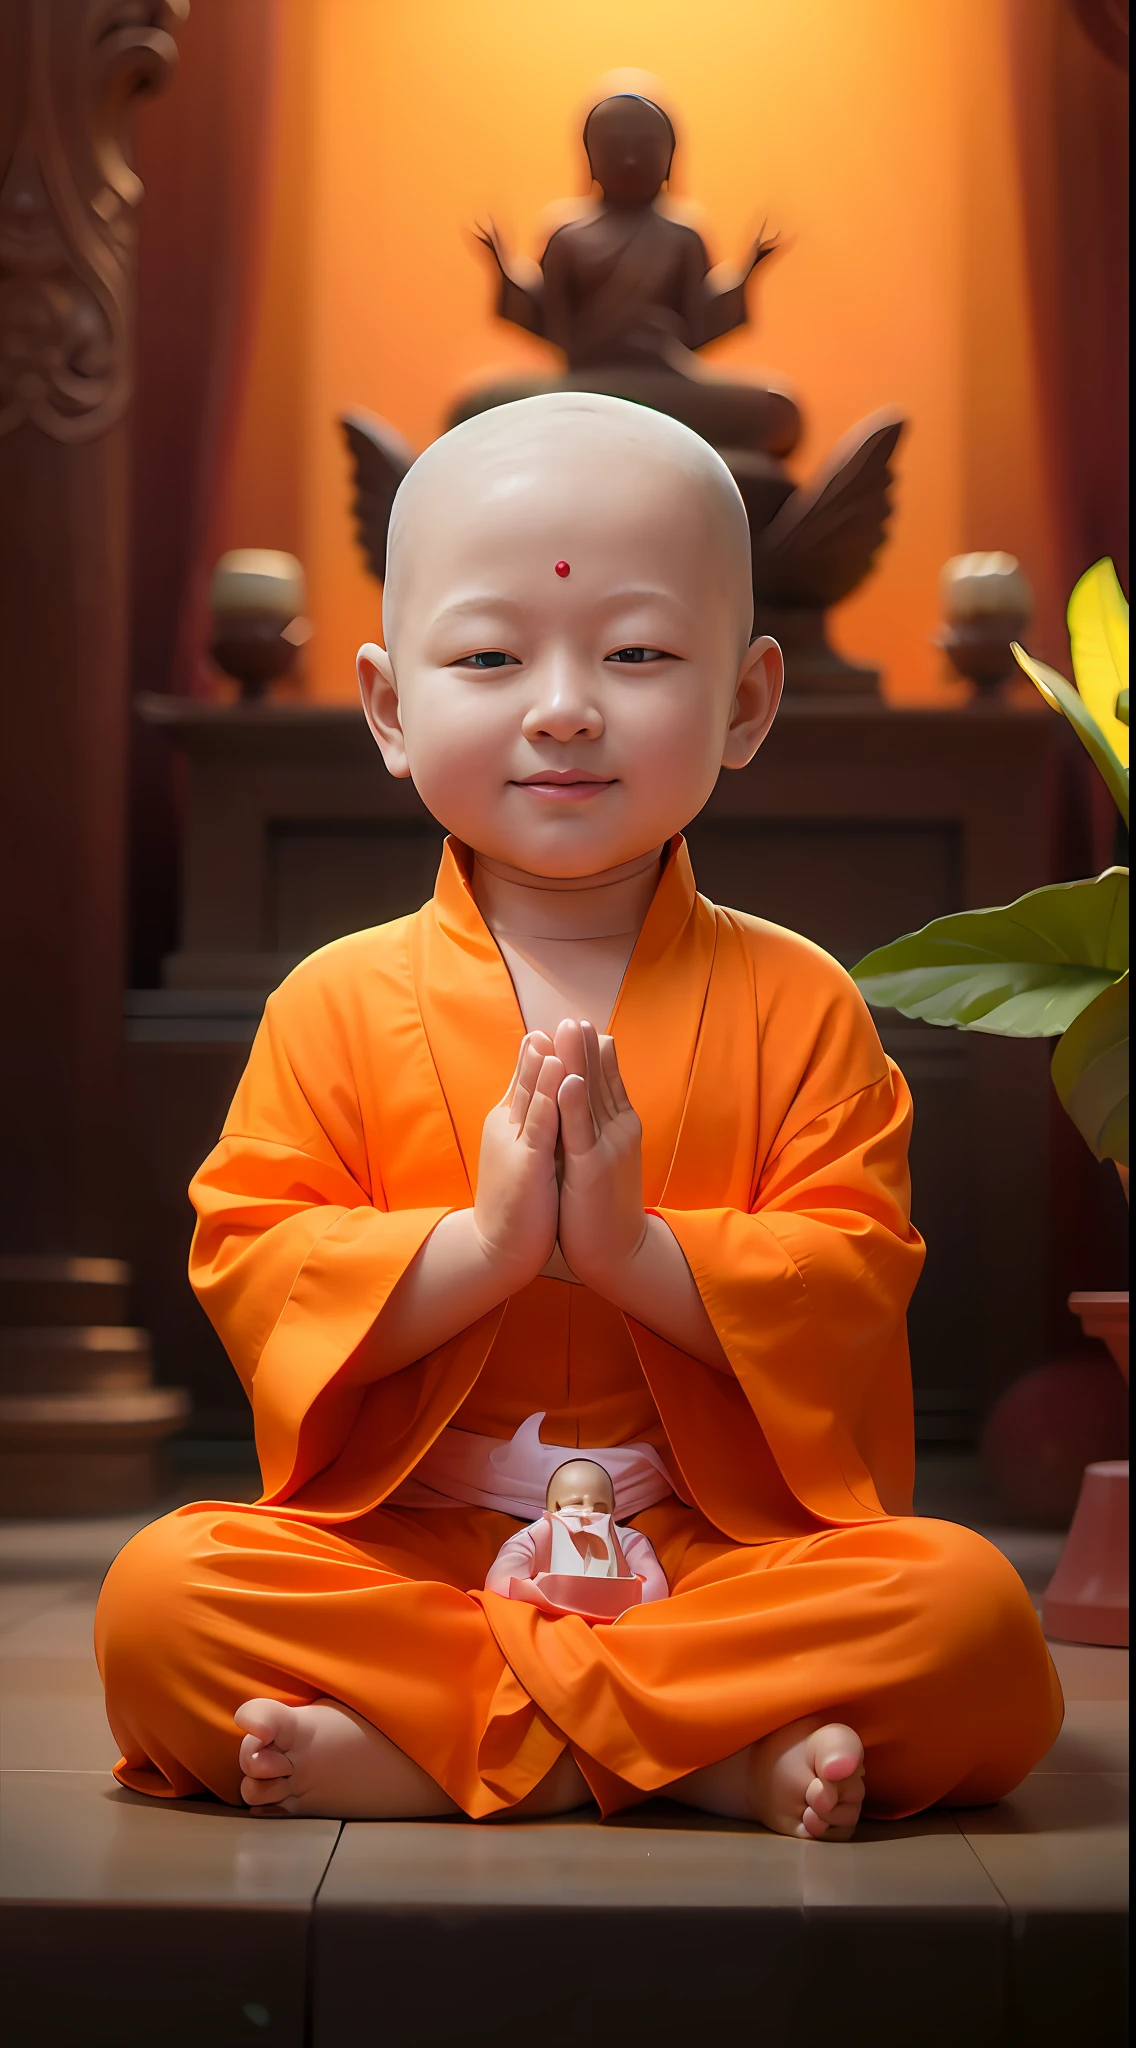 ยิ้มในชุดคลุมสีส้มนั่งอยู่หน้าแจกัน, ชาวพุทธ, buddhist พระภิกษุ, พระภิกษุ clothes, พระภิกษุ meditation, ถ่ายภาพบุคคล, ชาวพุทธ พระภิกษุ meditation, พระพุทธศาสนา, Taoist temples and พระภิกษุs, portrait of พระภิกษุ, เด็กน้อยสวมชุดแม่ชี, พระภิกษุ, การทำสมาธิสวดมนต์, เด็ก, การแสดงออกอันเงียบสงบ, พระภิกษุ, เด็กdy big breasts, เด็ก, รอยยิ้มอันเงียบสงบ